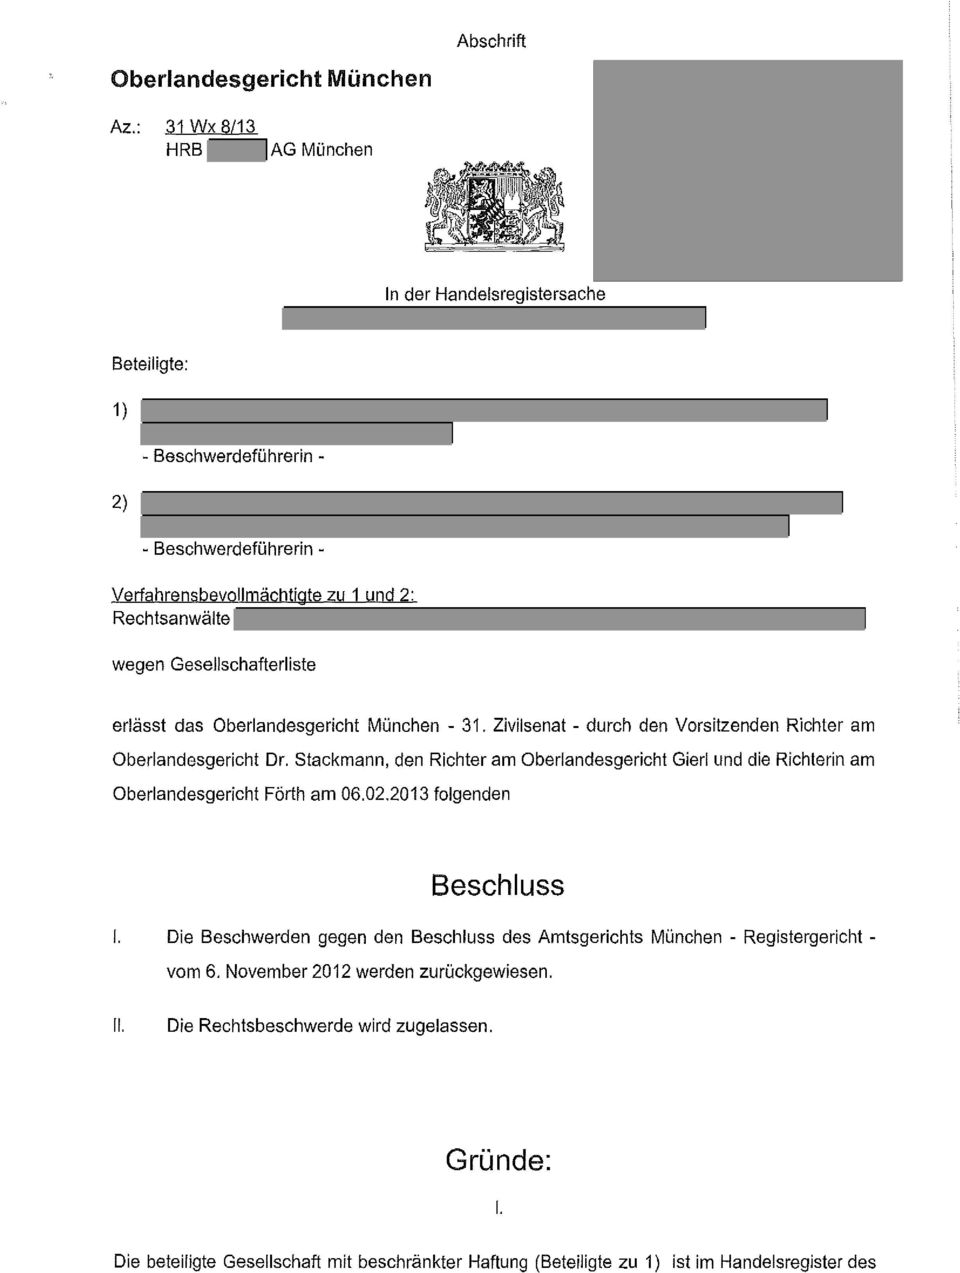 Zivilsenat - durch den Vorsitzenden Richter am Oberlandesgericht Dr. Stackmann, den Richter Gierl und die Richterin am Oberlandesgericht Förth am 06,02,2013 folgenden Beschluss I.